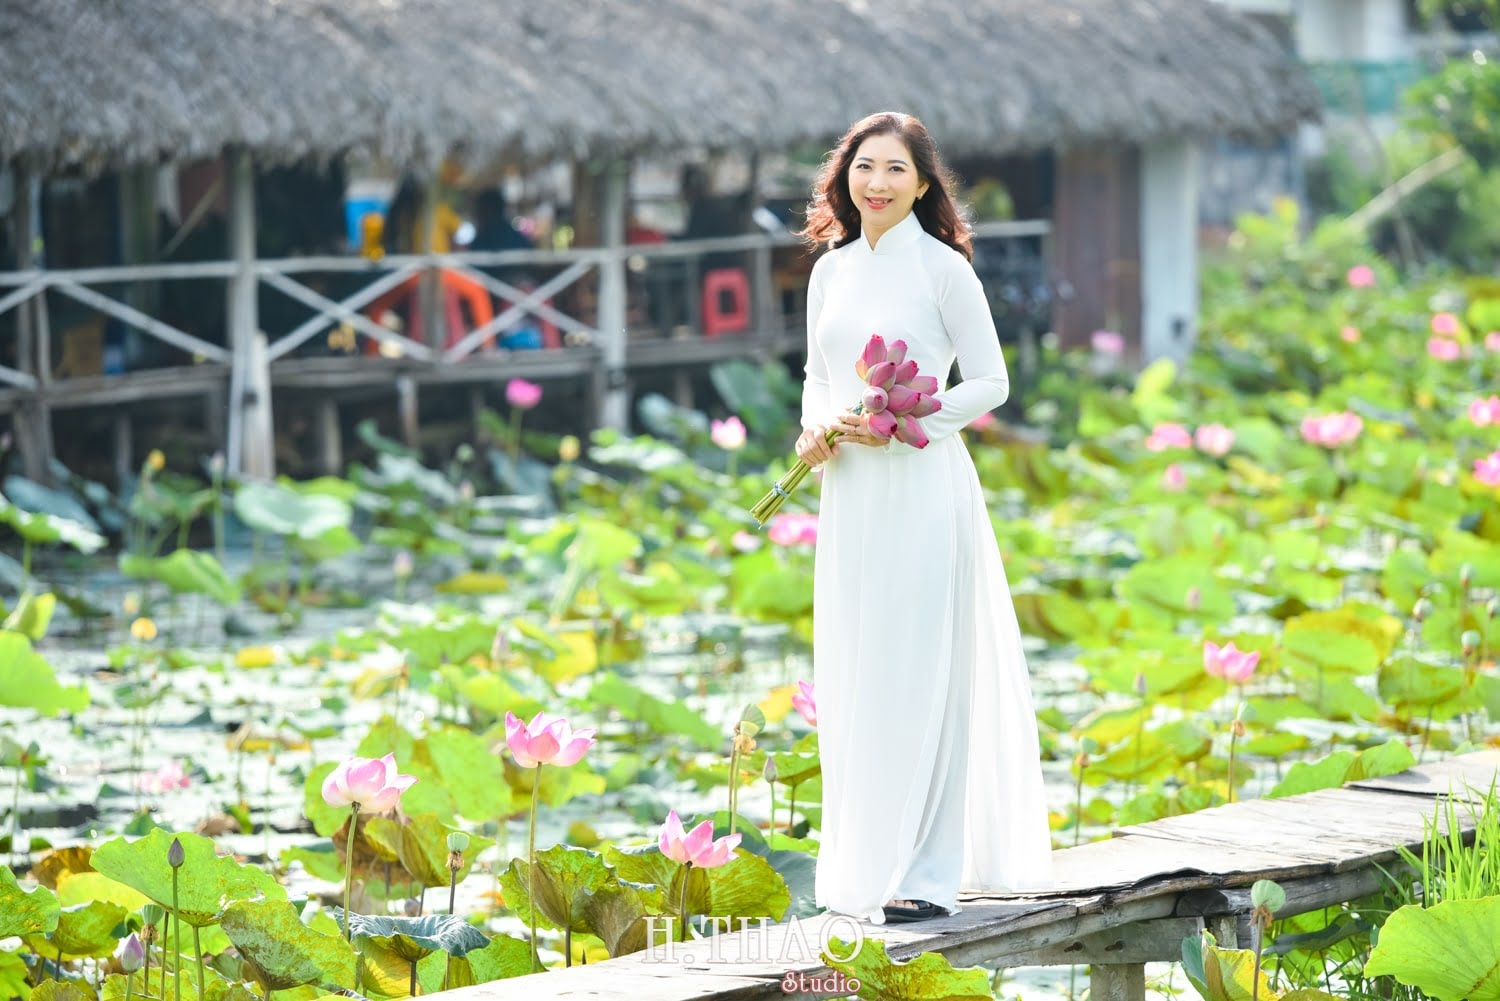 Anh Hoa sen 3 min - Studio chuyên chụp ảnh với hoa sen đẹp, giá rẻ Tp.HCM – HThao Studio